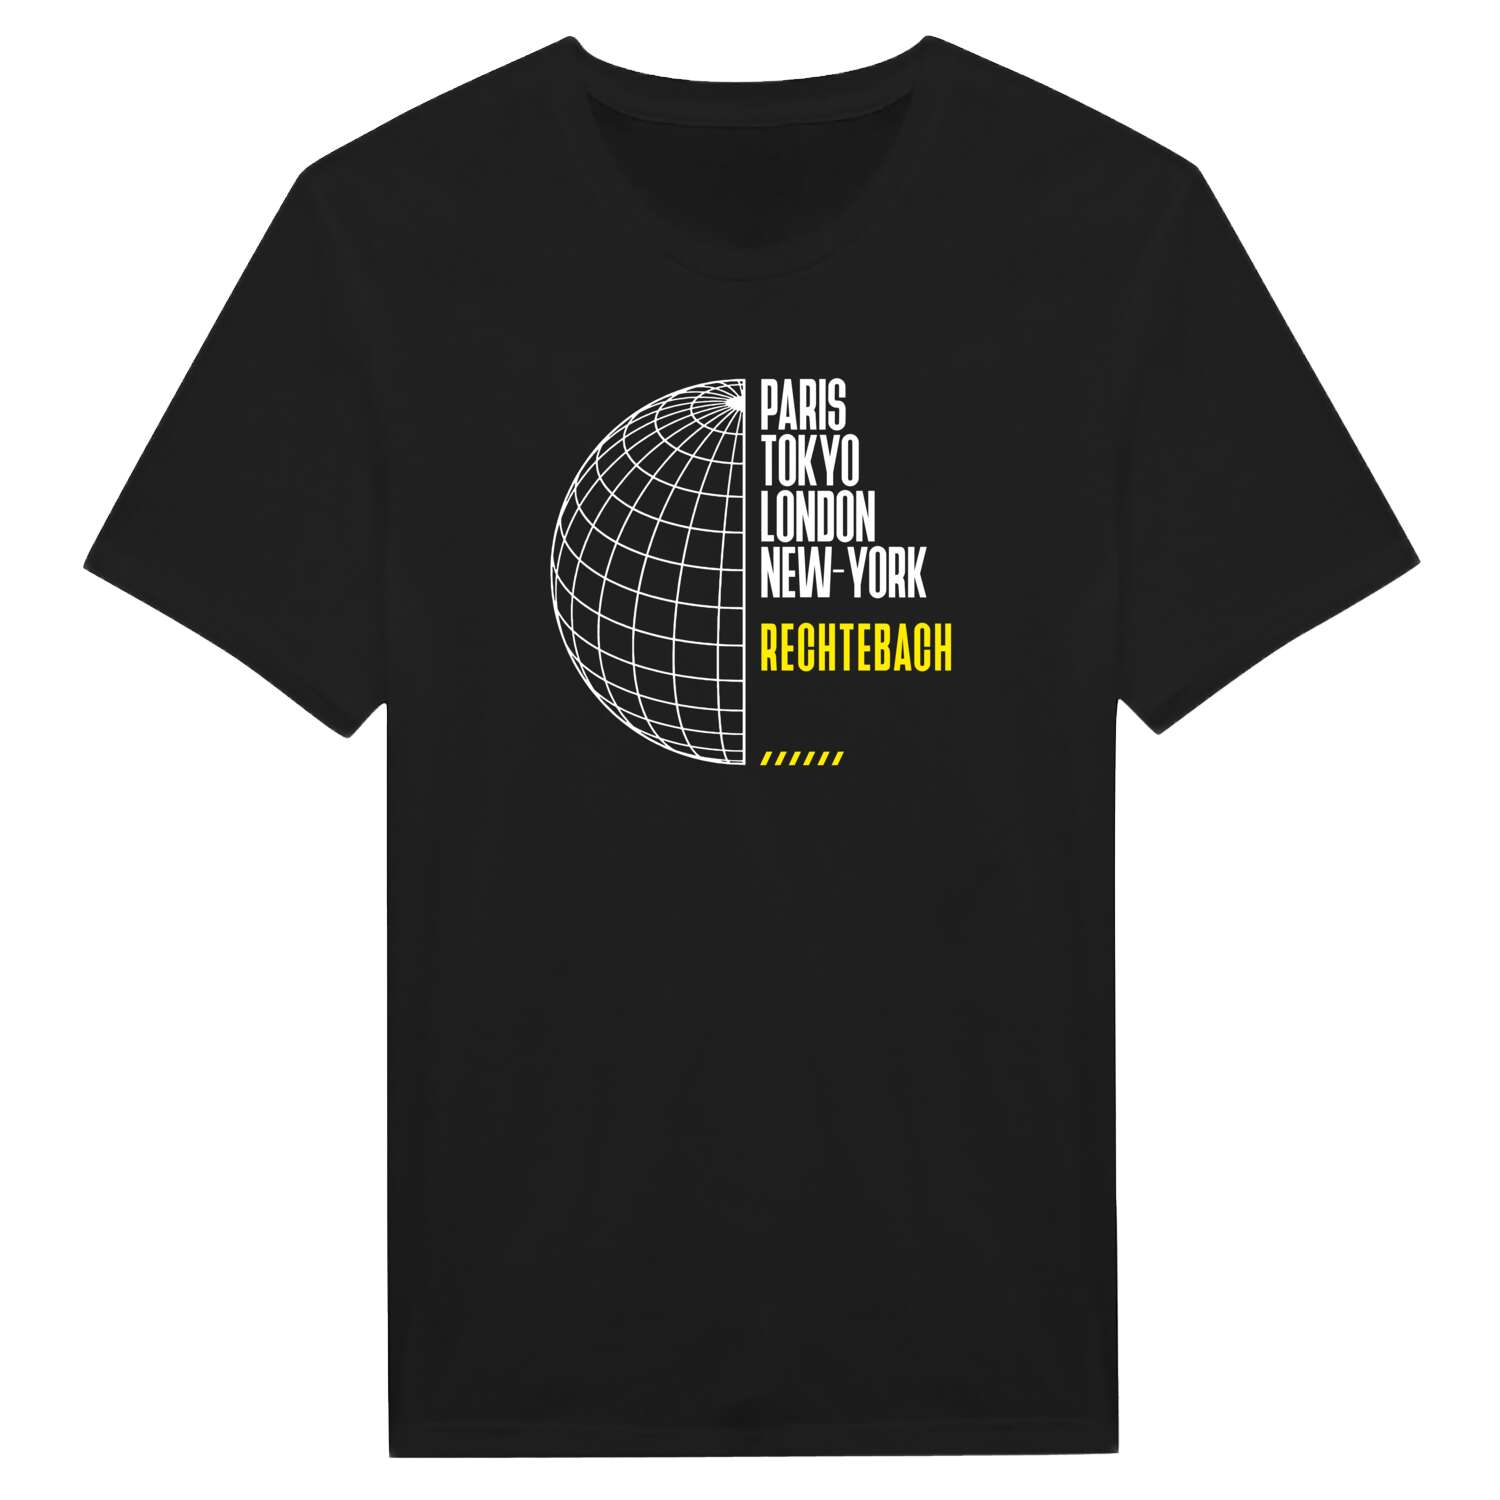 Rechtebach T-Shirt »Paris Tokyo London«